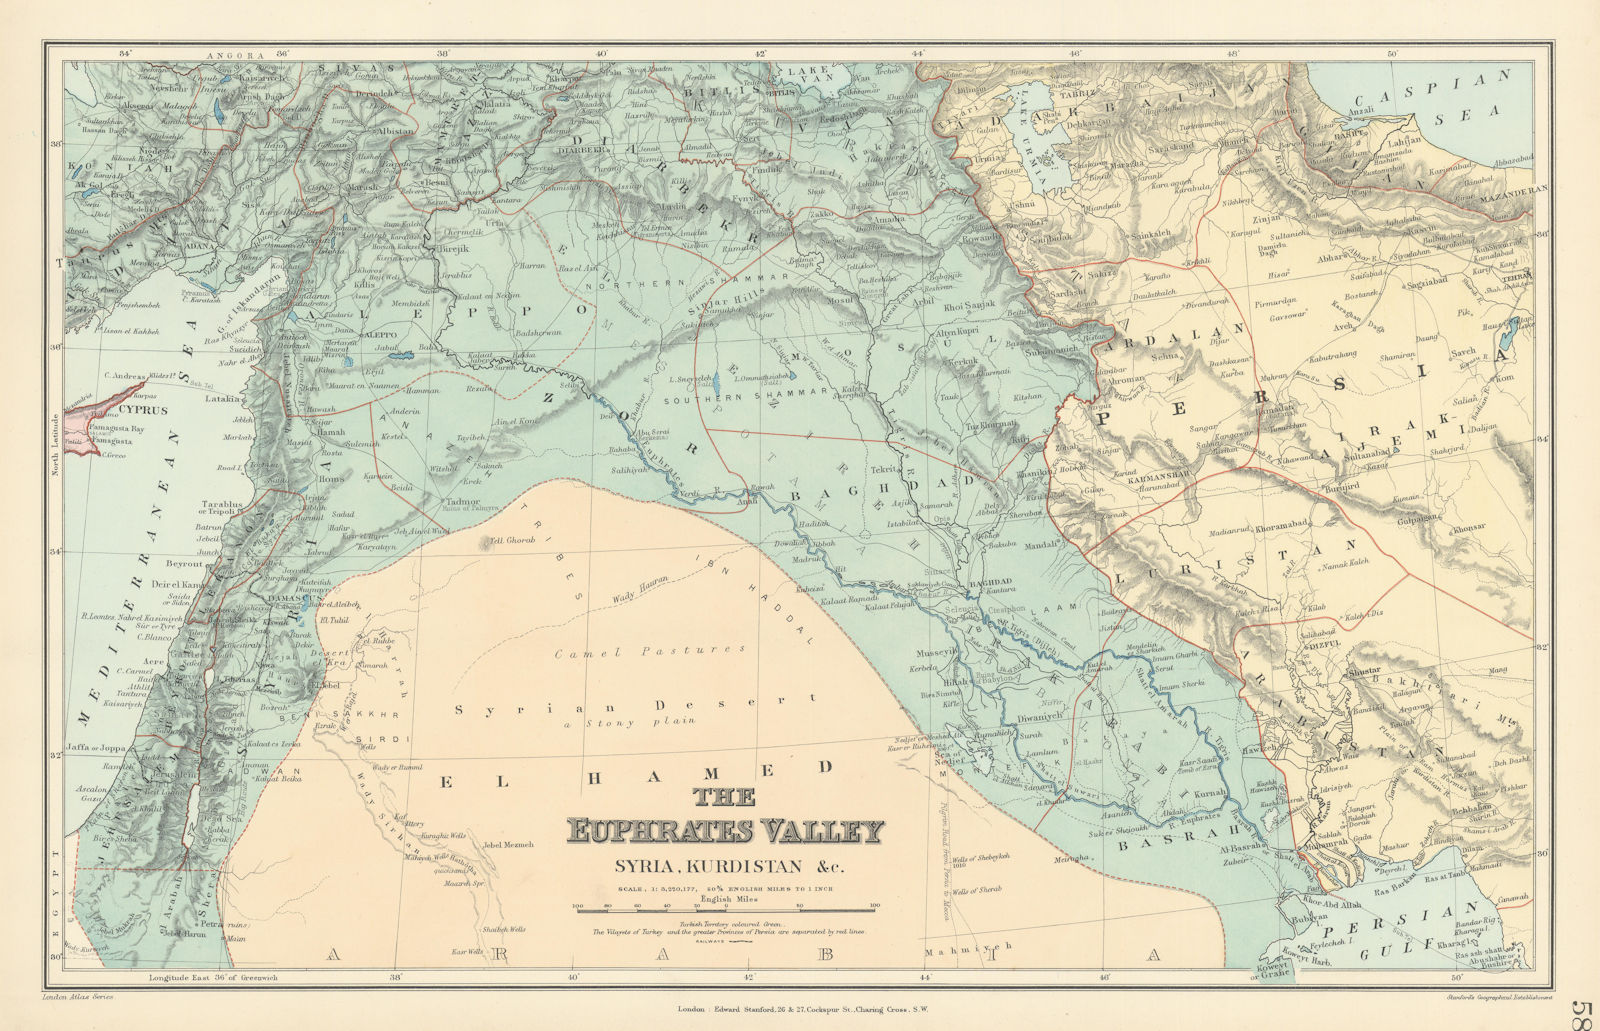 Euphrates Valley Syria Kurdistan Levant Iraq Persia Palestine. STANFORD 1896 map